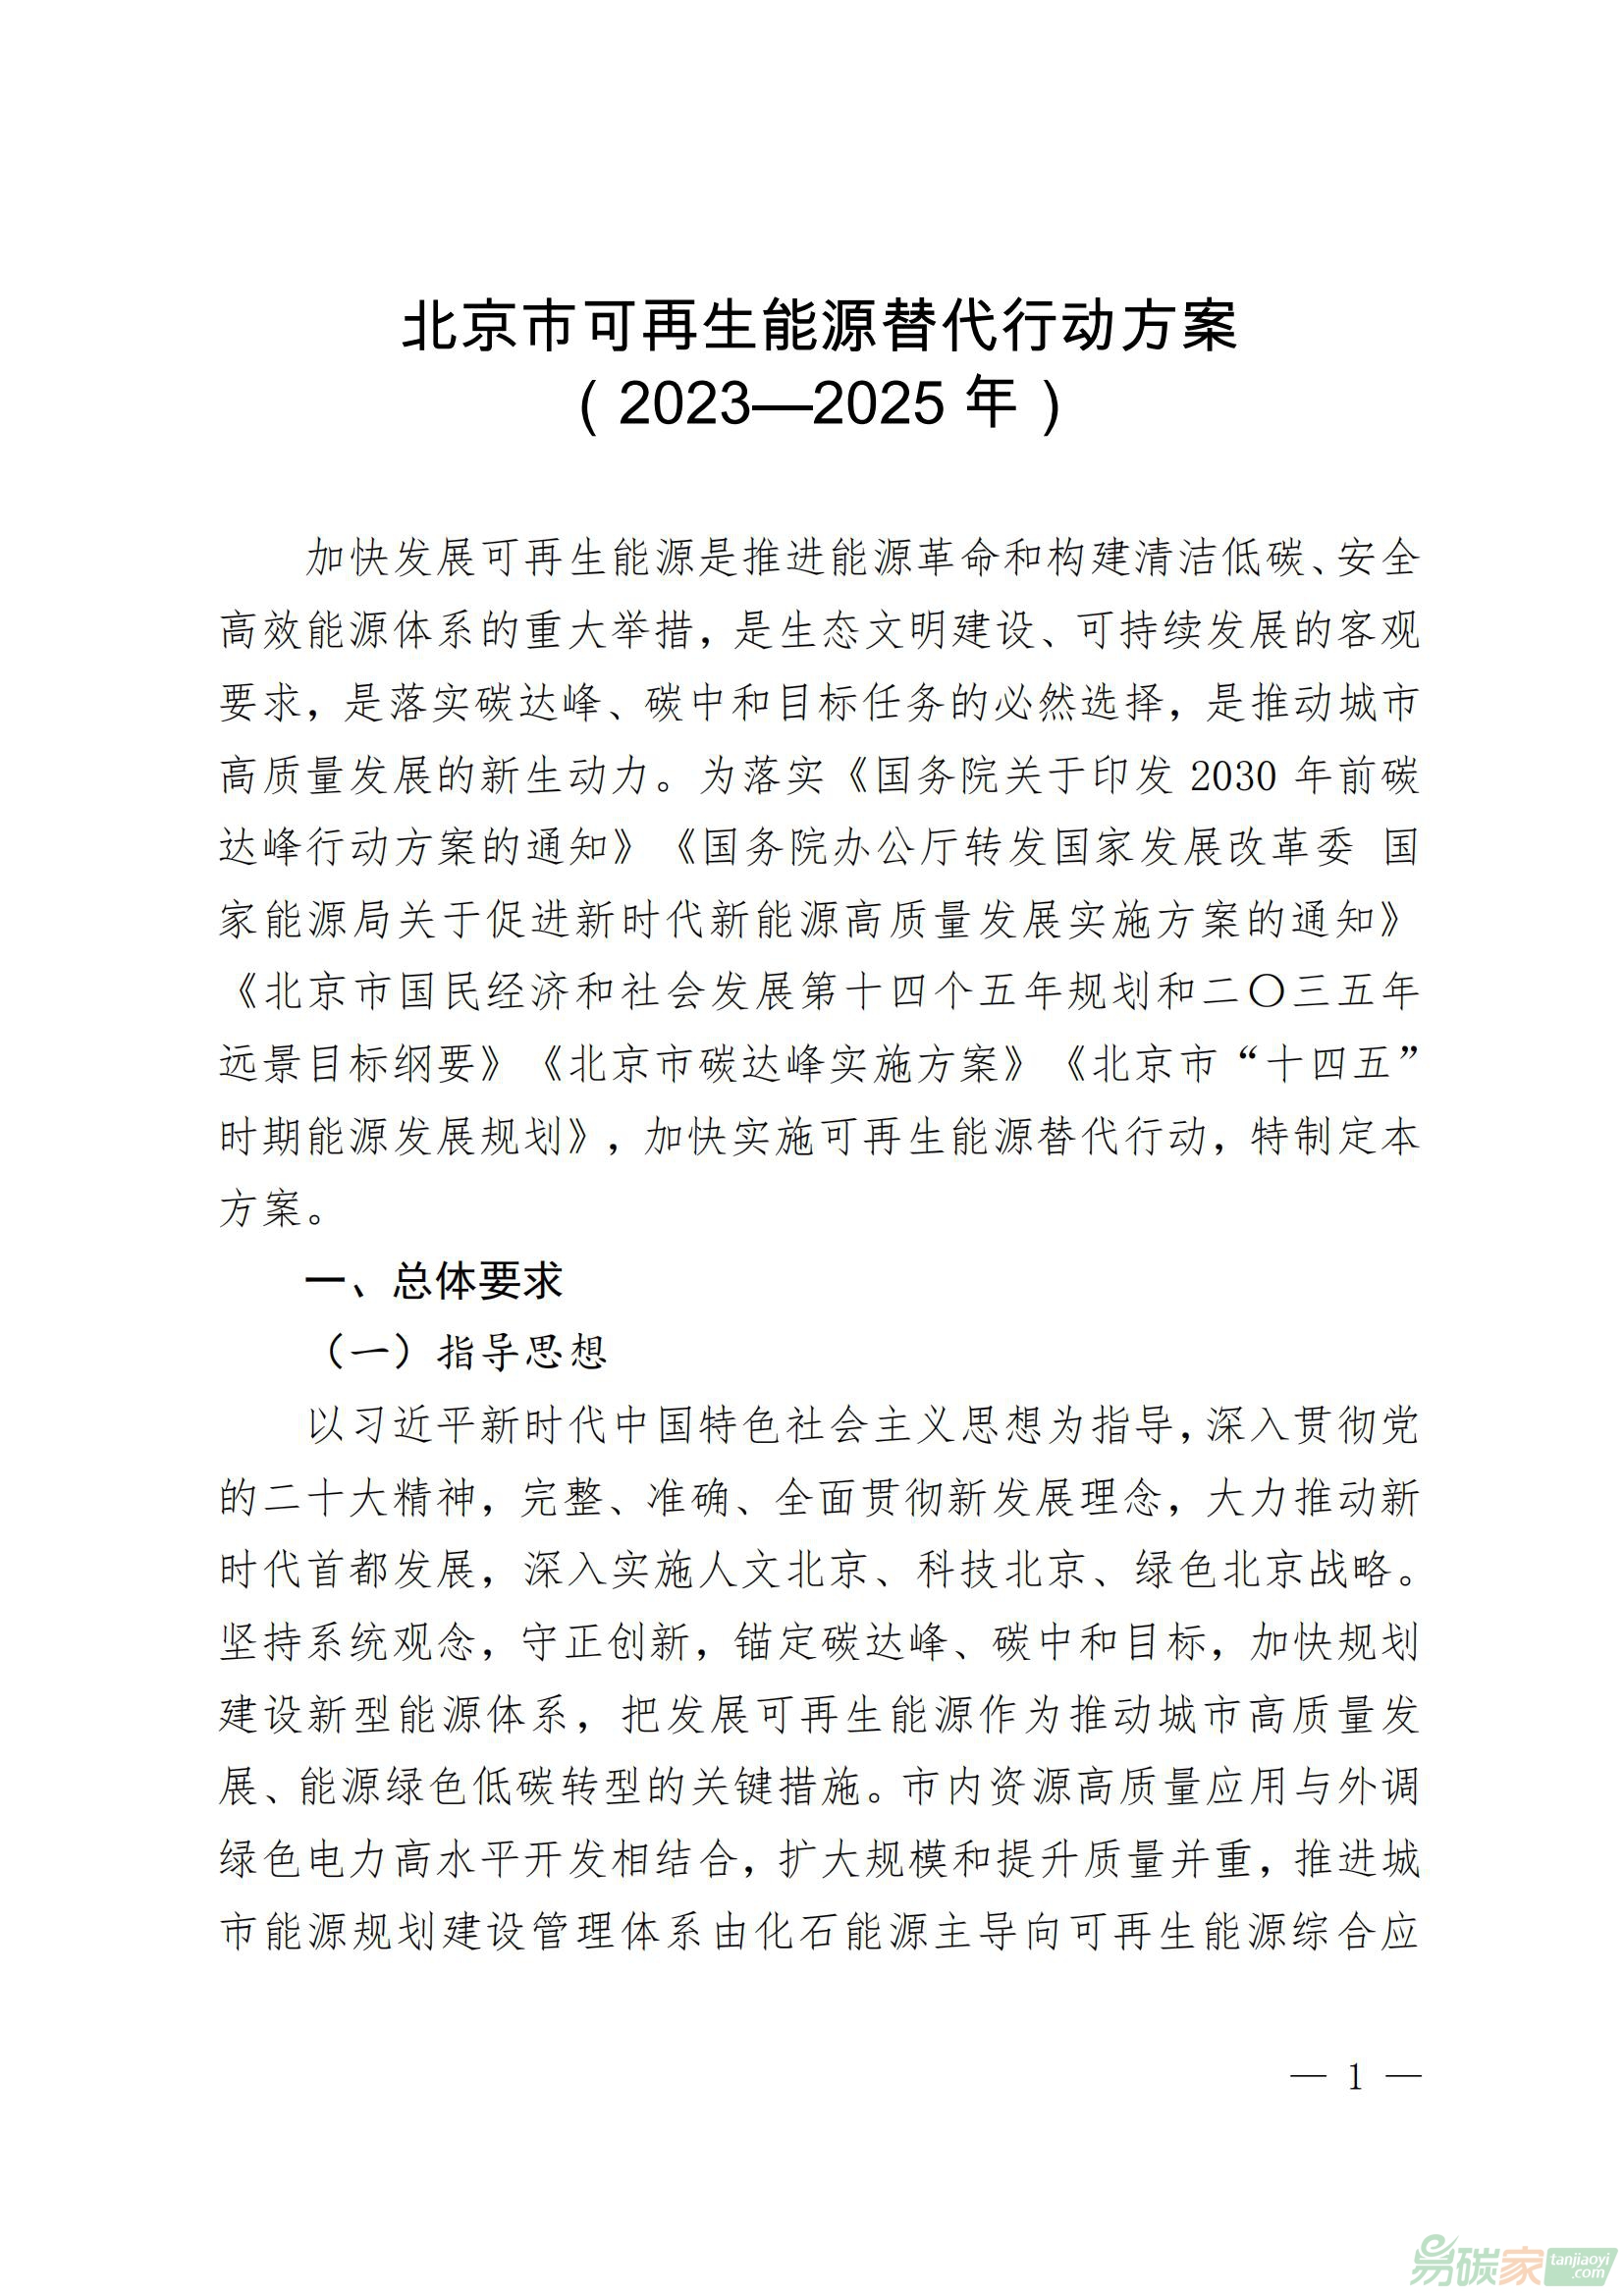 北京市可再生能源替代行動方案（2023—2025年）